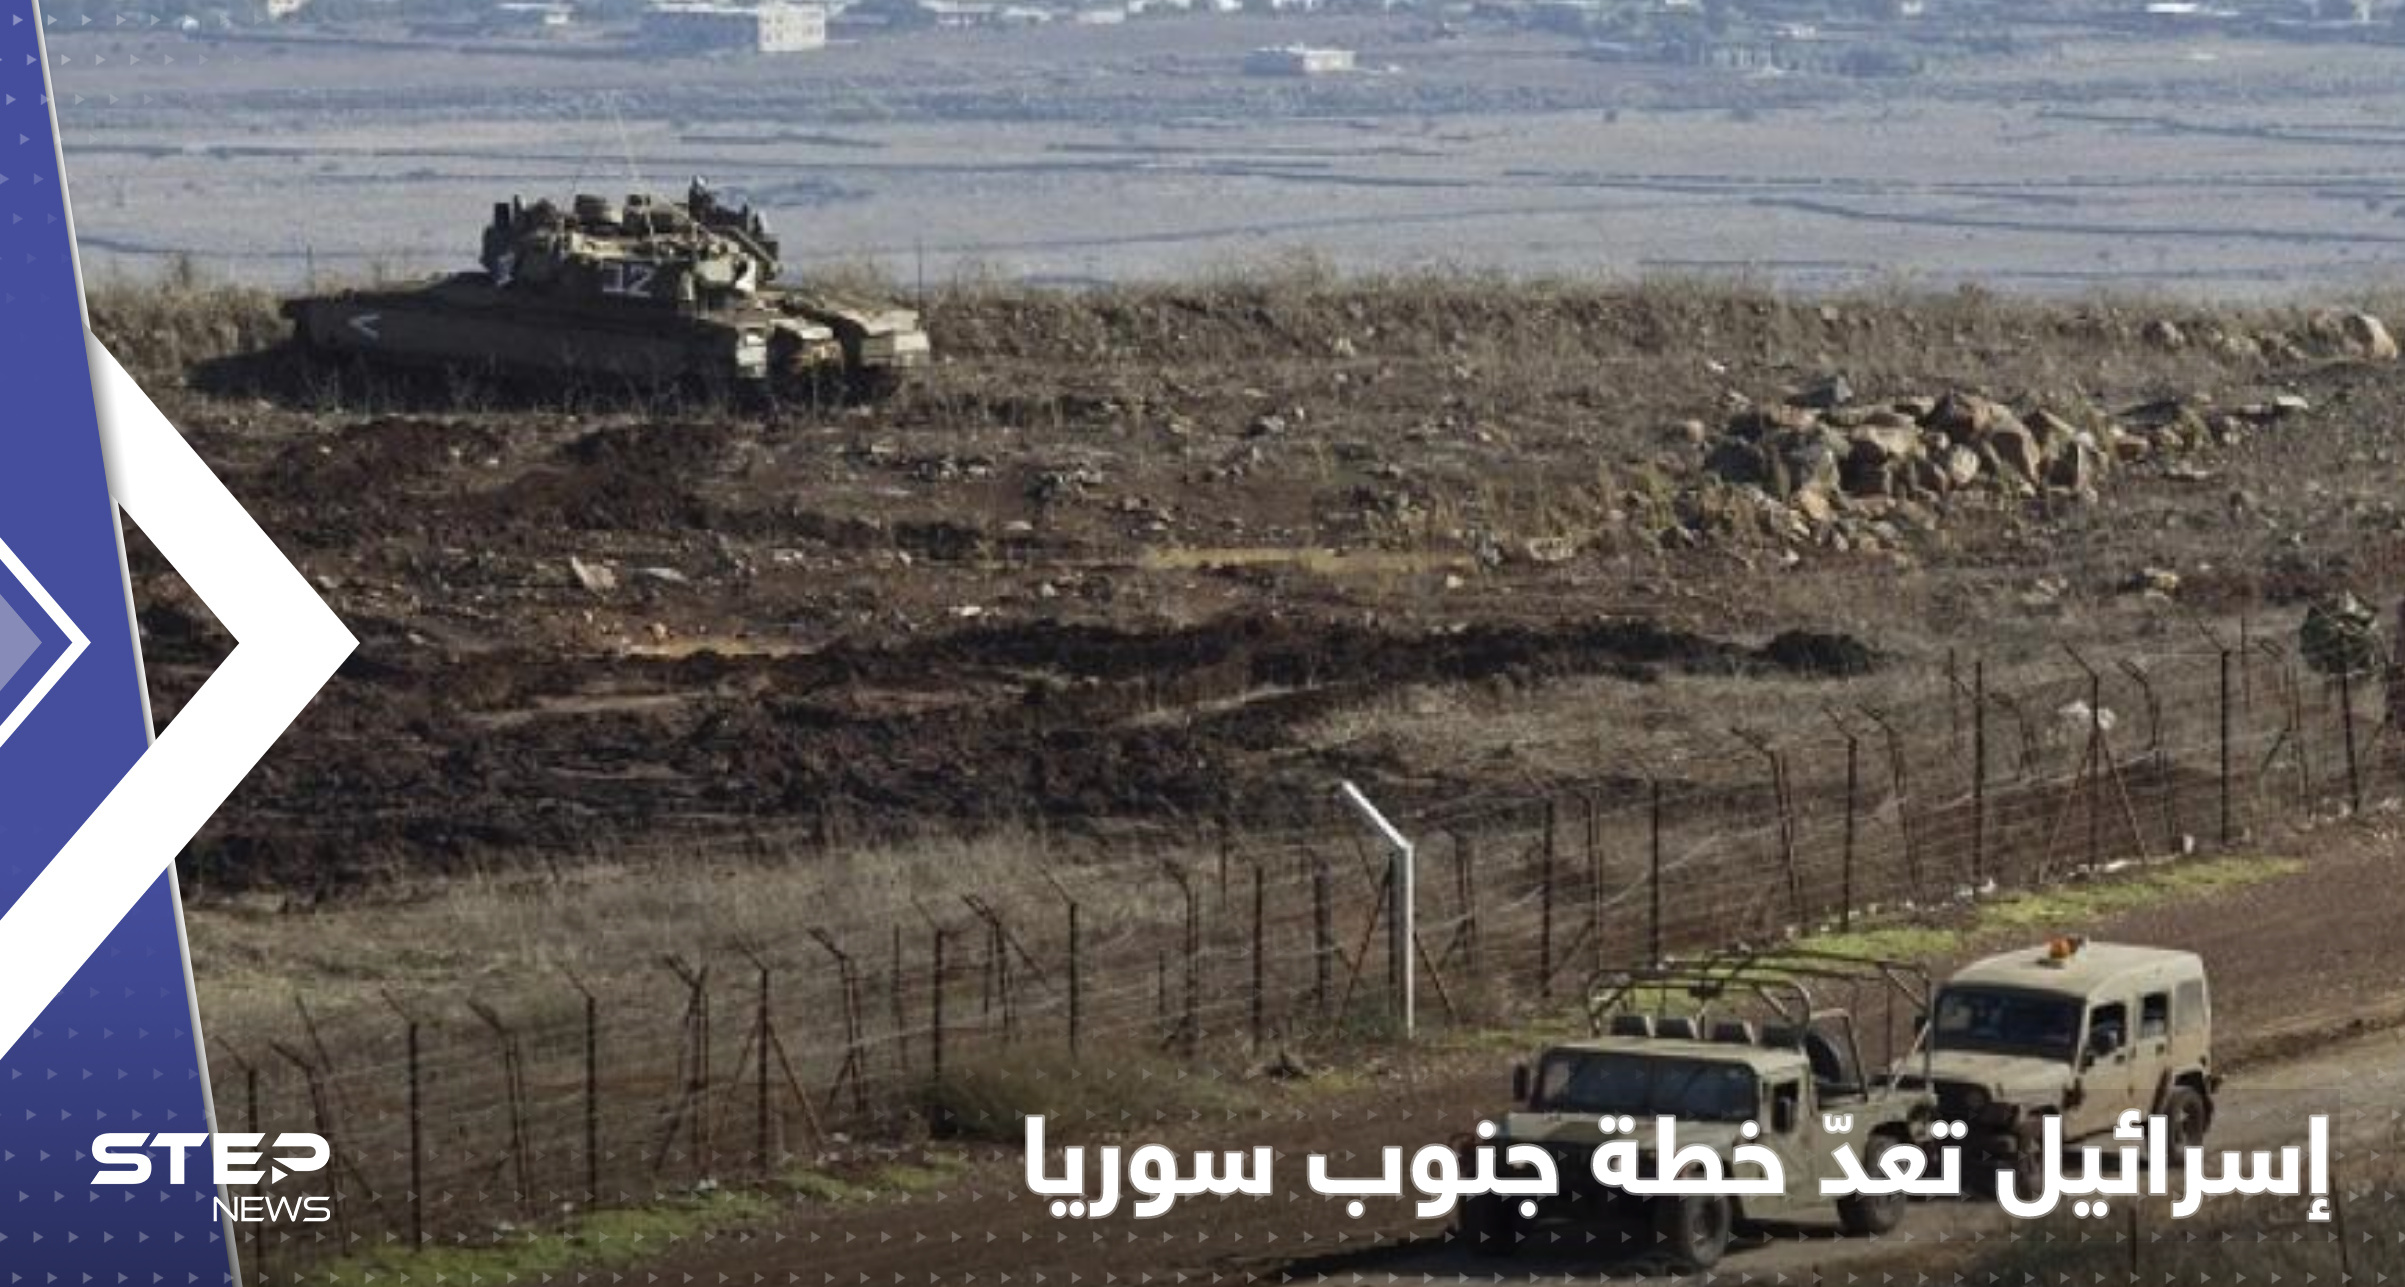 بعد اقتحام الحدود.. قائد فرقة الجولان يكشف خطة للجيش الإسرائيلي جنوب سوريا